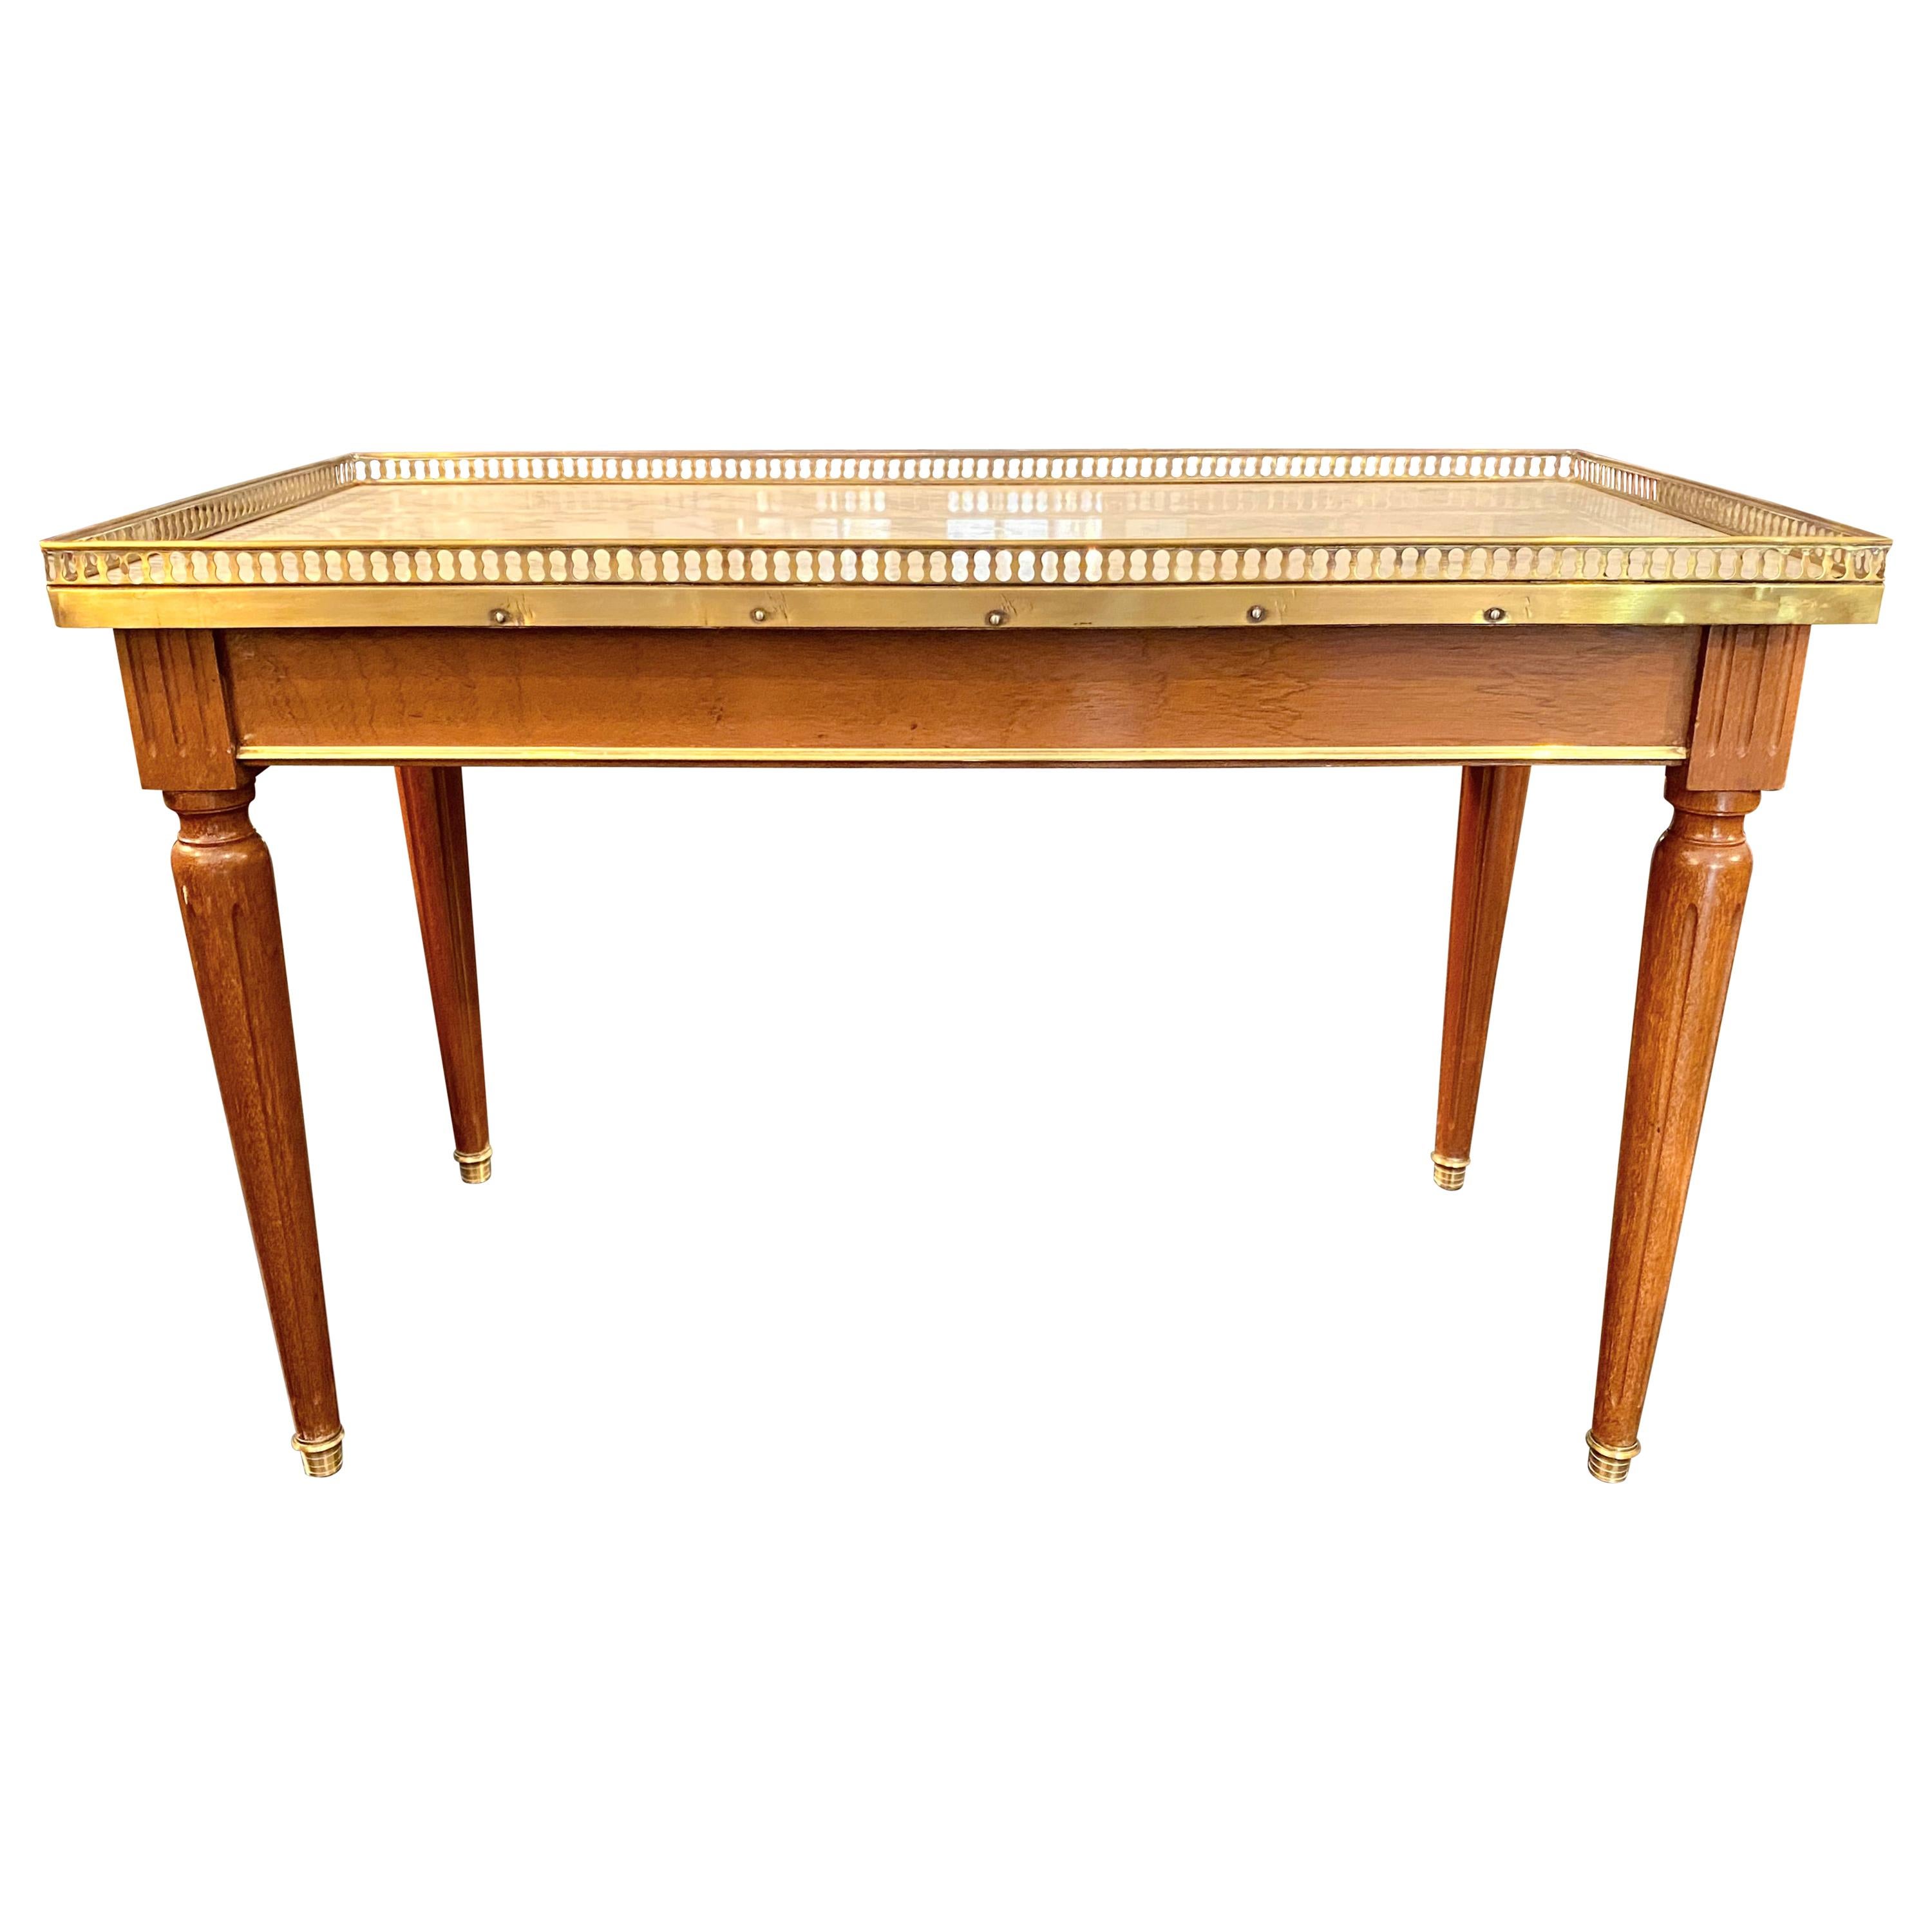 Niedriger Tisch im Stil des französischen Maison Jansen, klassischer Louis XVI.-Stil